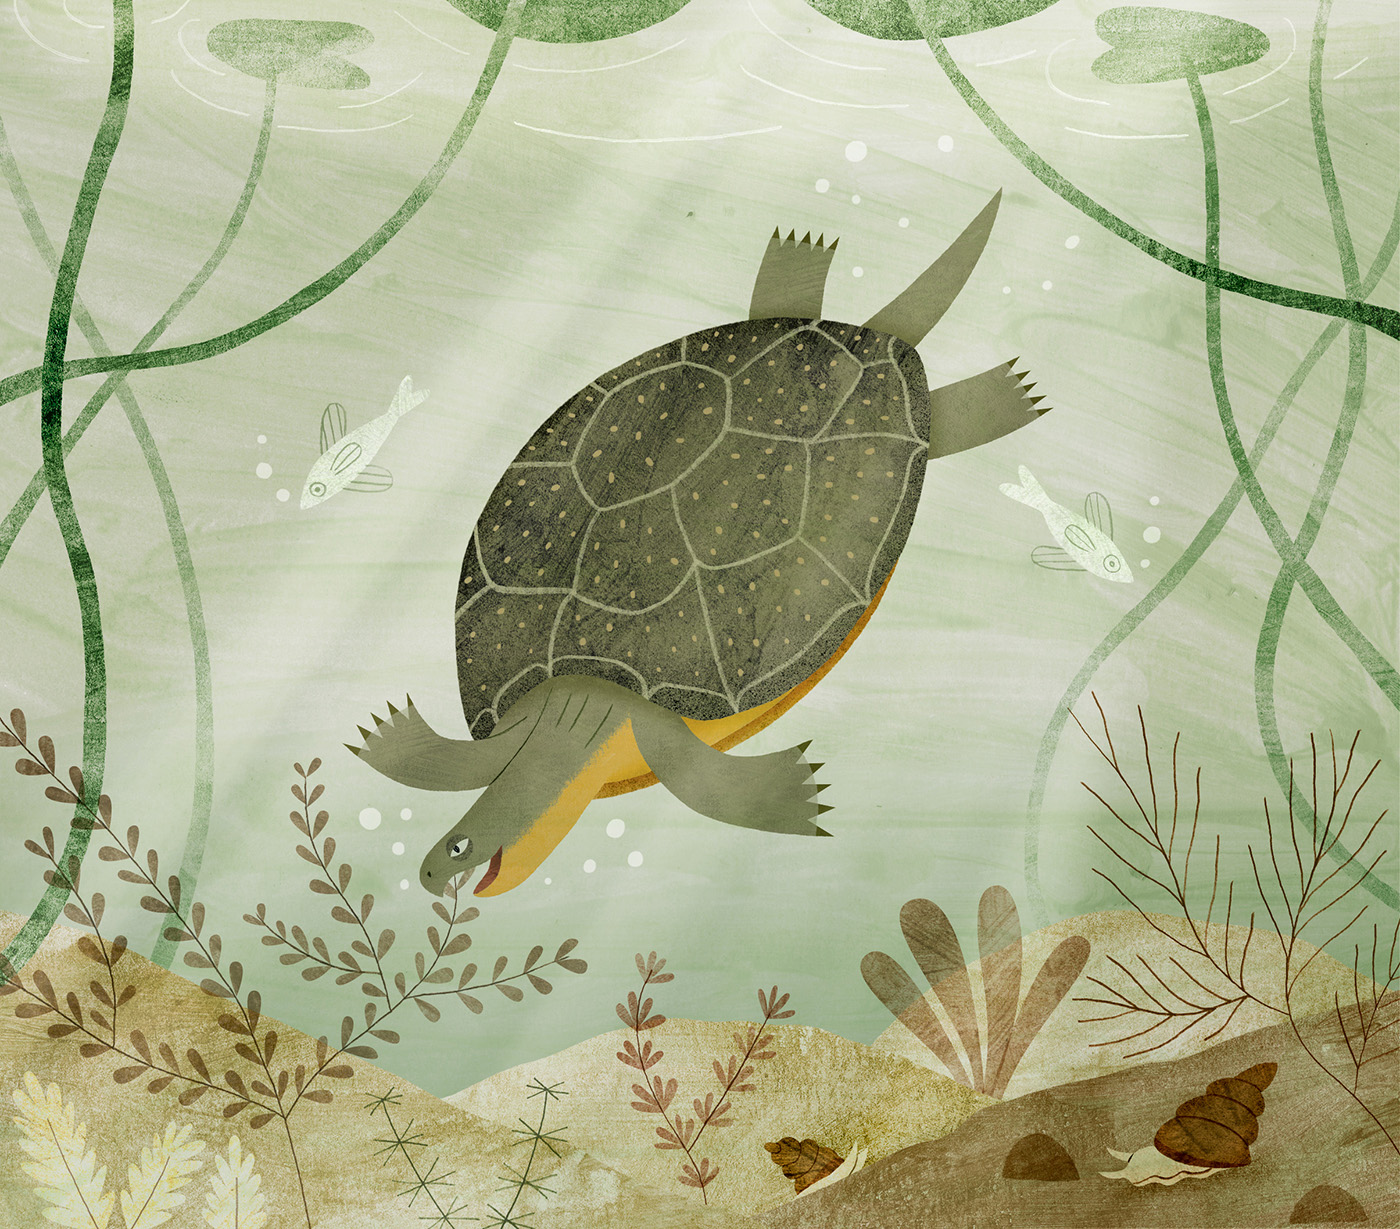 A Turtle's Dangerous Journey (Amicus Publishing)